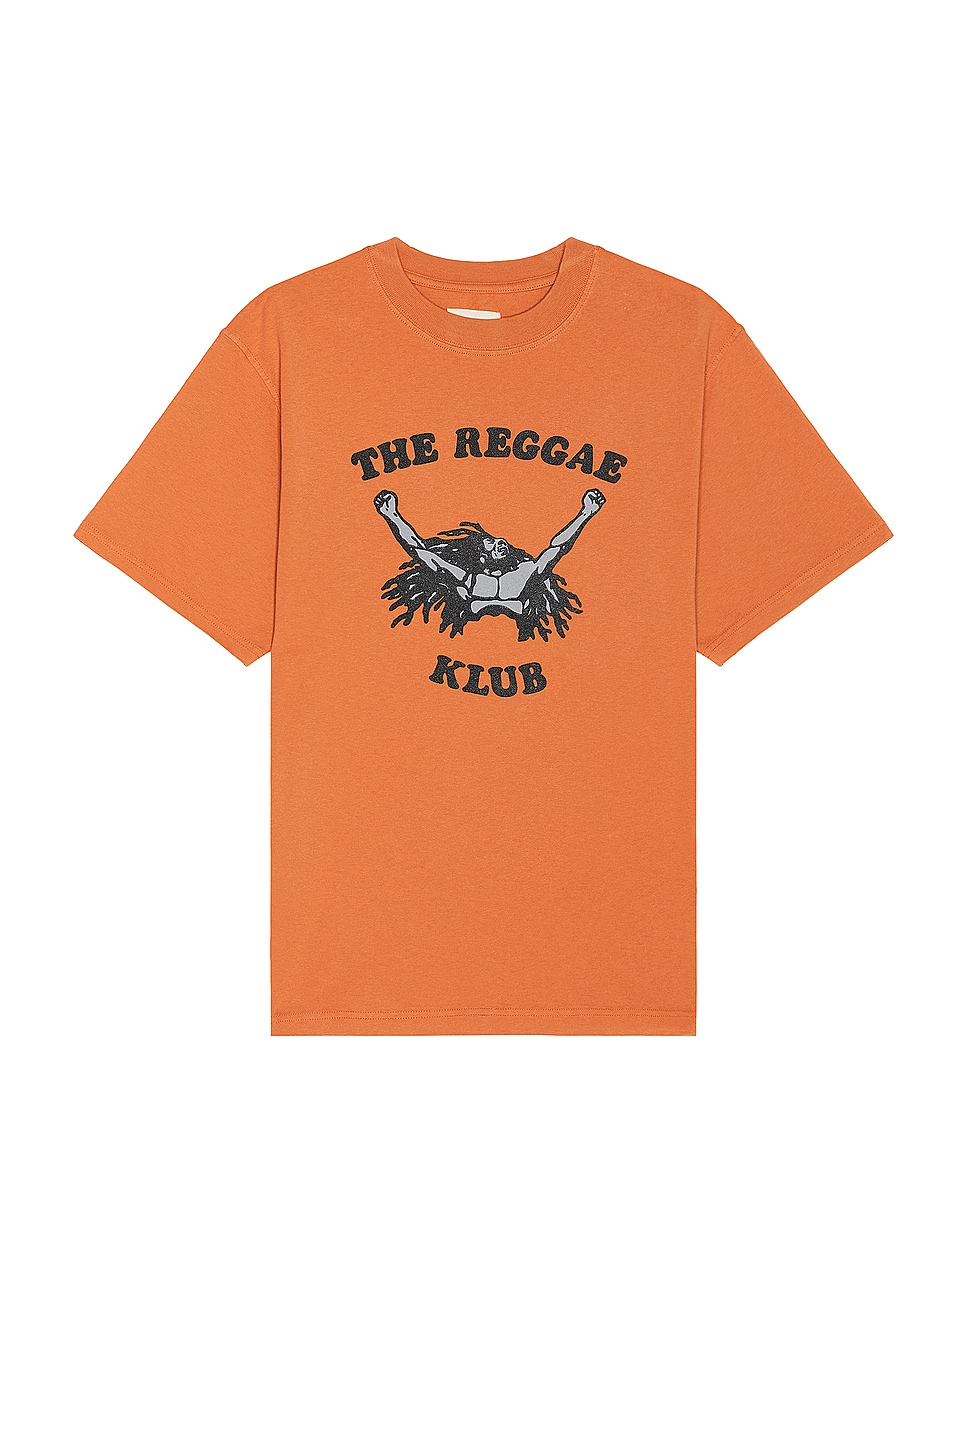 Reggae Klub Tee in Orange